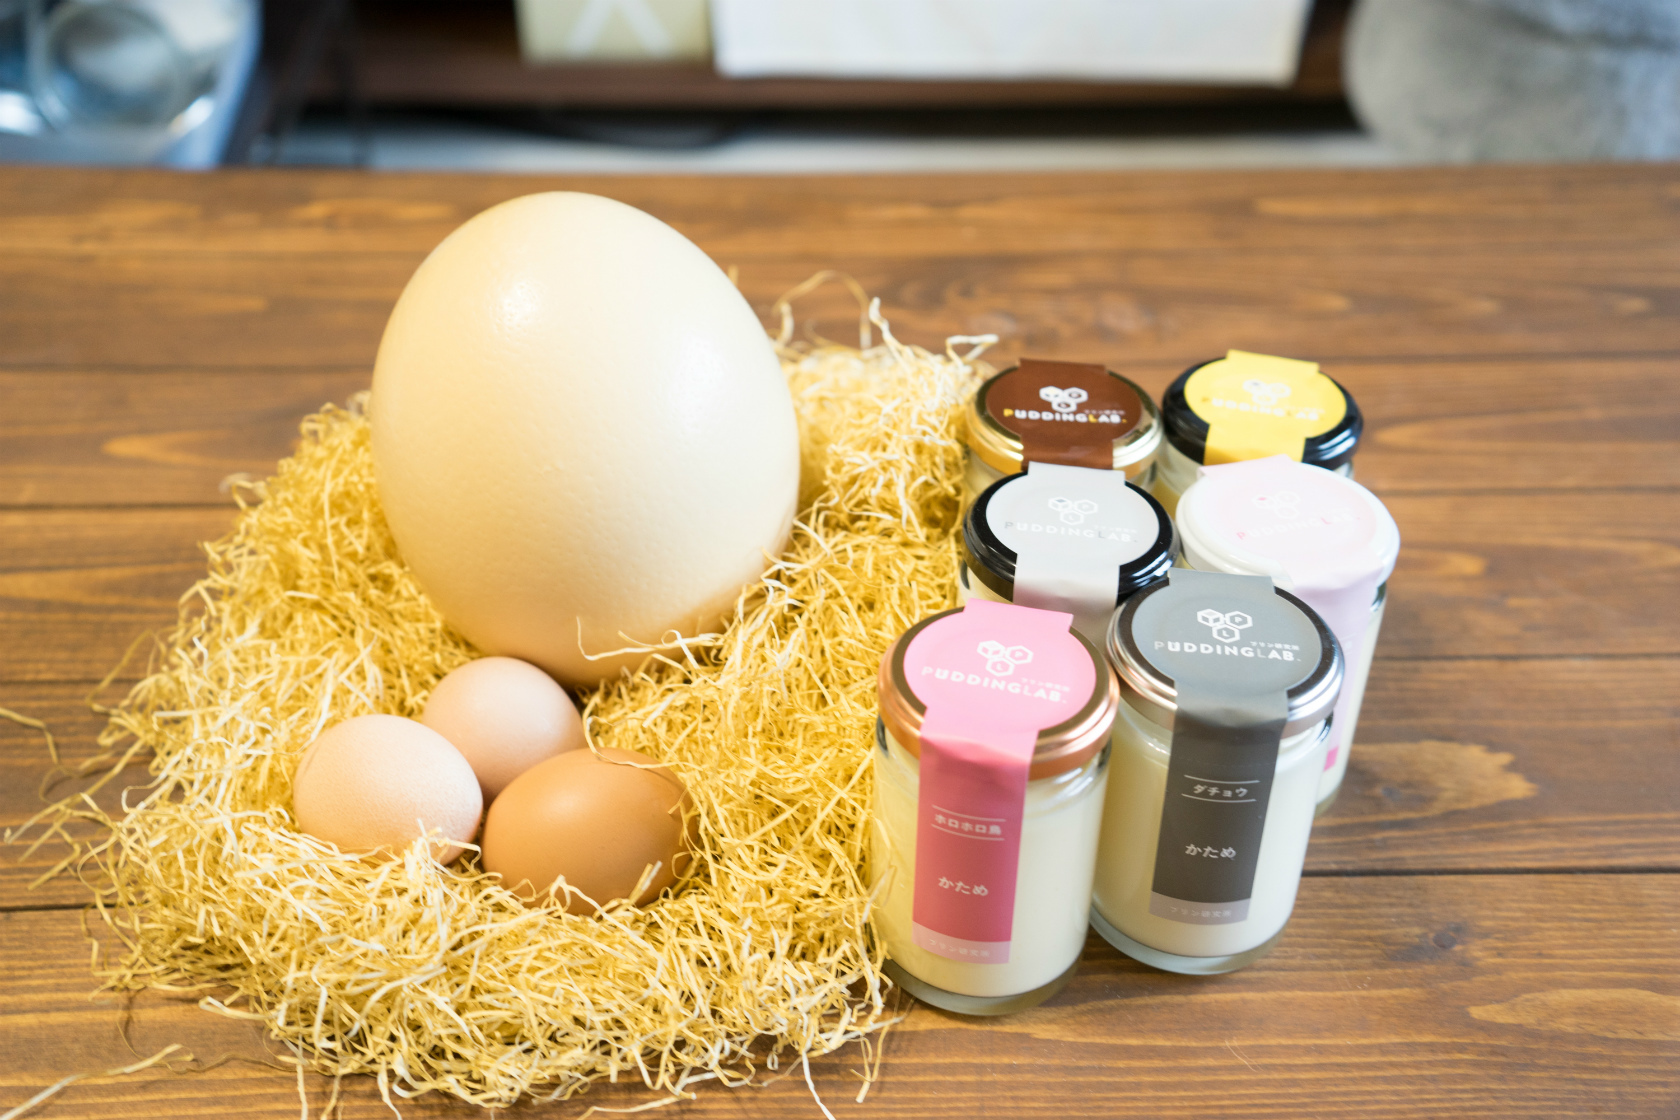 ホロホロ鳥の卵とダチョウの卵で作った プリン どんな味 食感 食べ比べキャンペーンを7月16日 開催 プリン研究所のプレスリリース